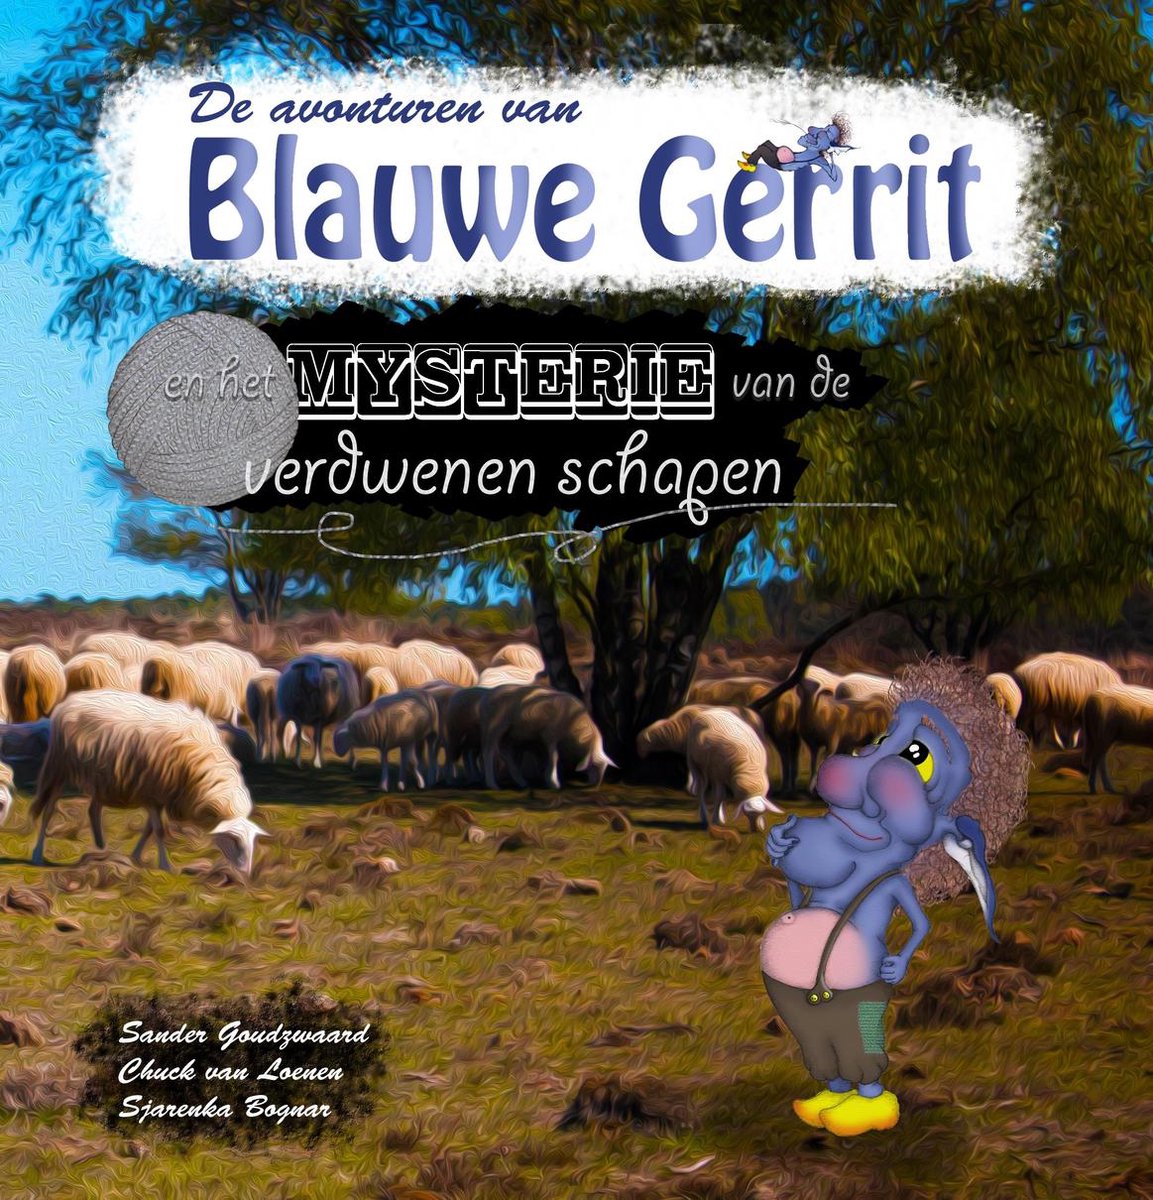 De avonturen van Blauwe Gerrit en het mysterie van de verdwenen schapen